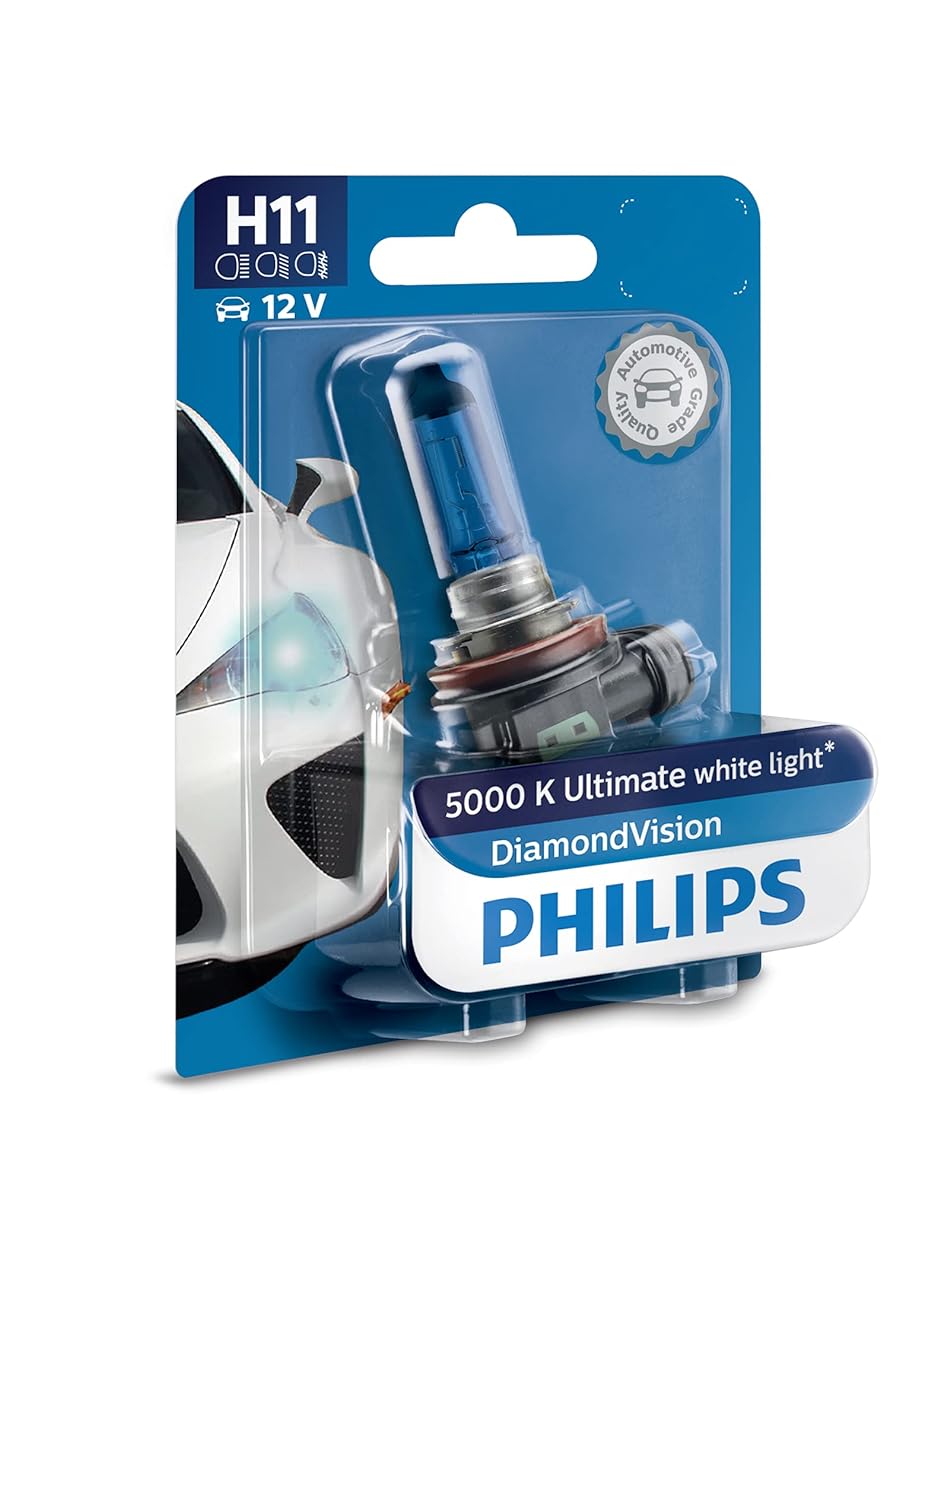 Philips H11 12V Halogen Light For Car, Headlight bulb , Pack of 1